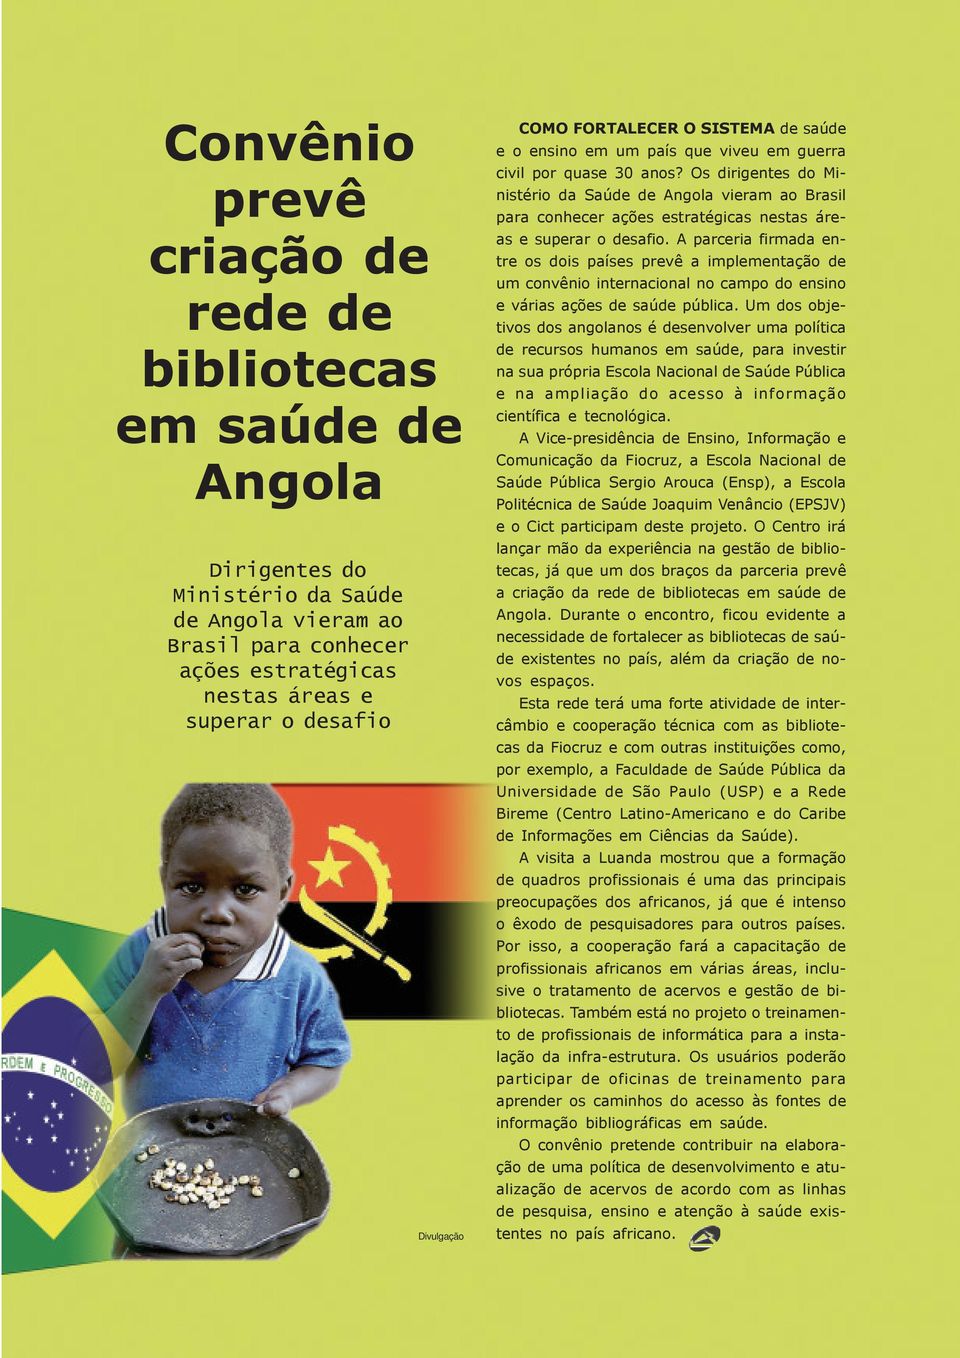 Os dirigentes do Ministério da Saúde de Angola vieram ao Brasil para conhecer ações estratégicas nestas áreas e superar o desafio.